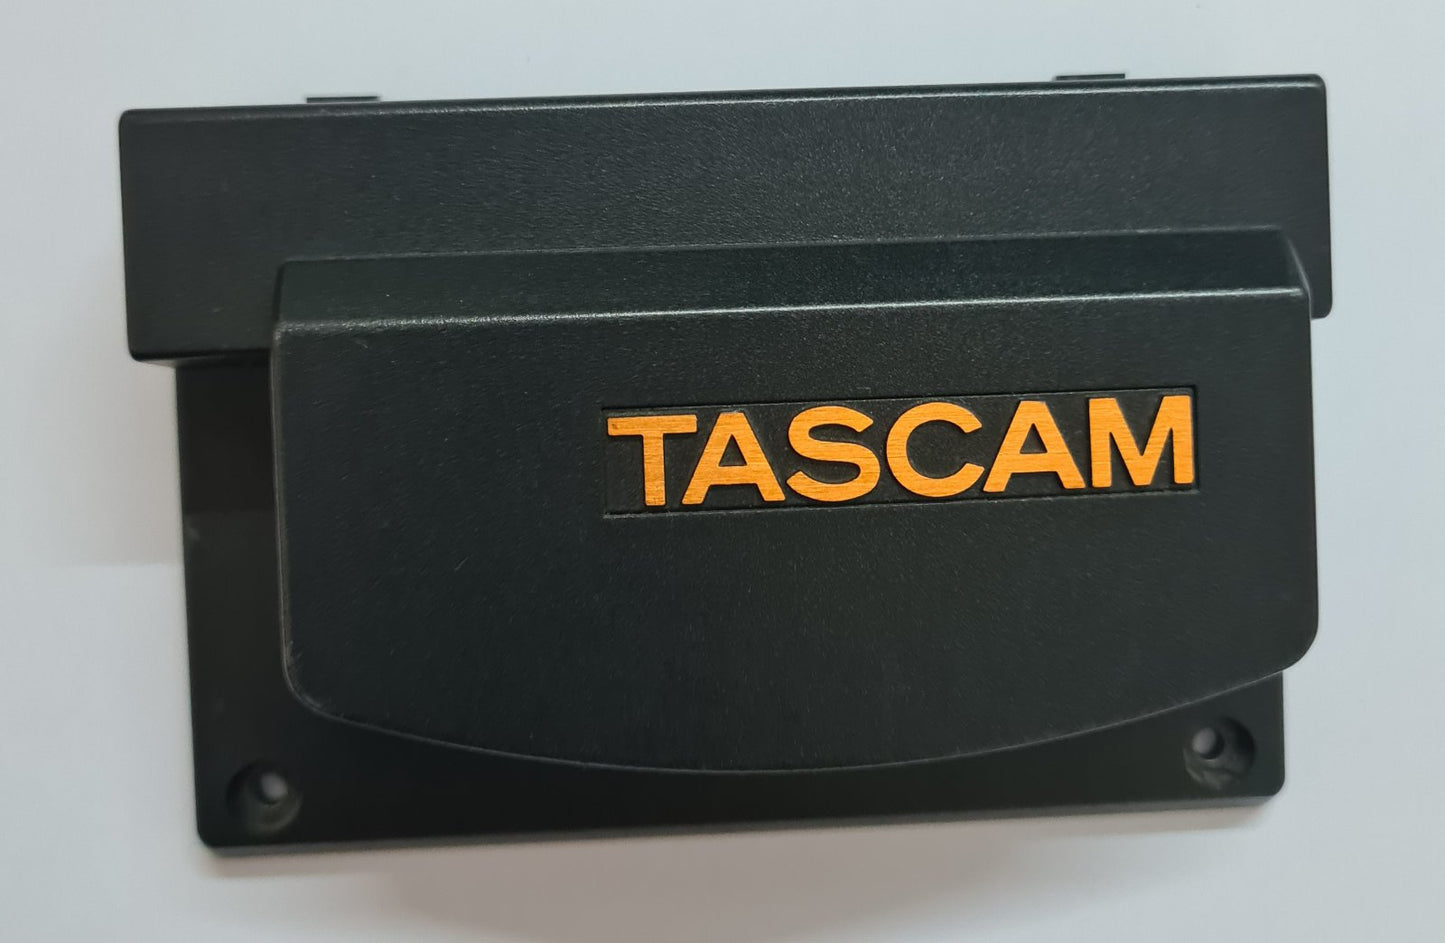 Tascam TSR-8 headcover